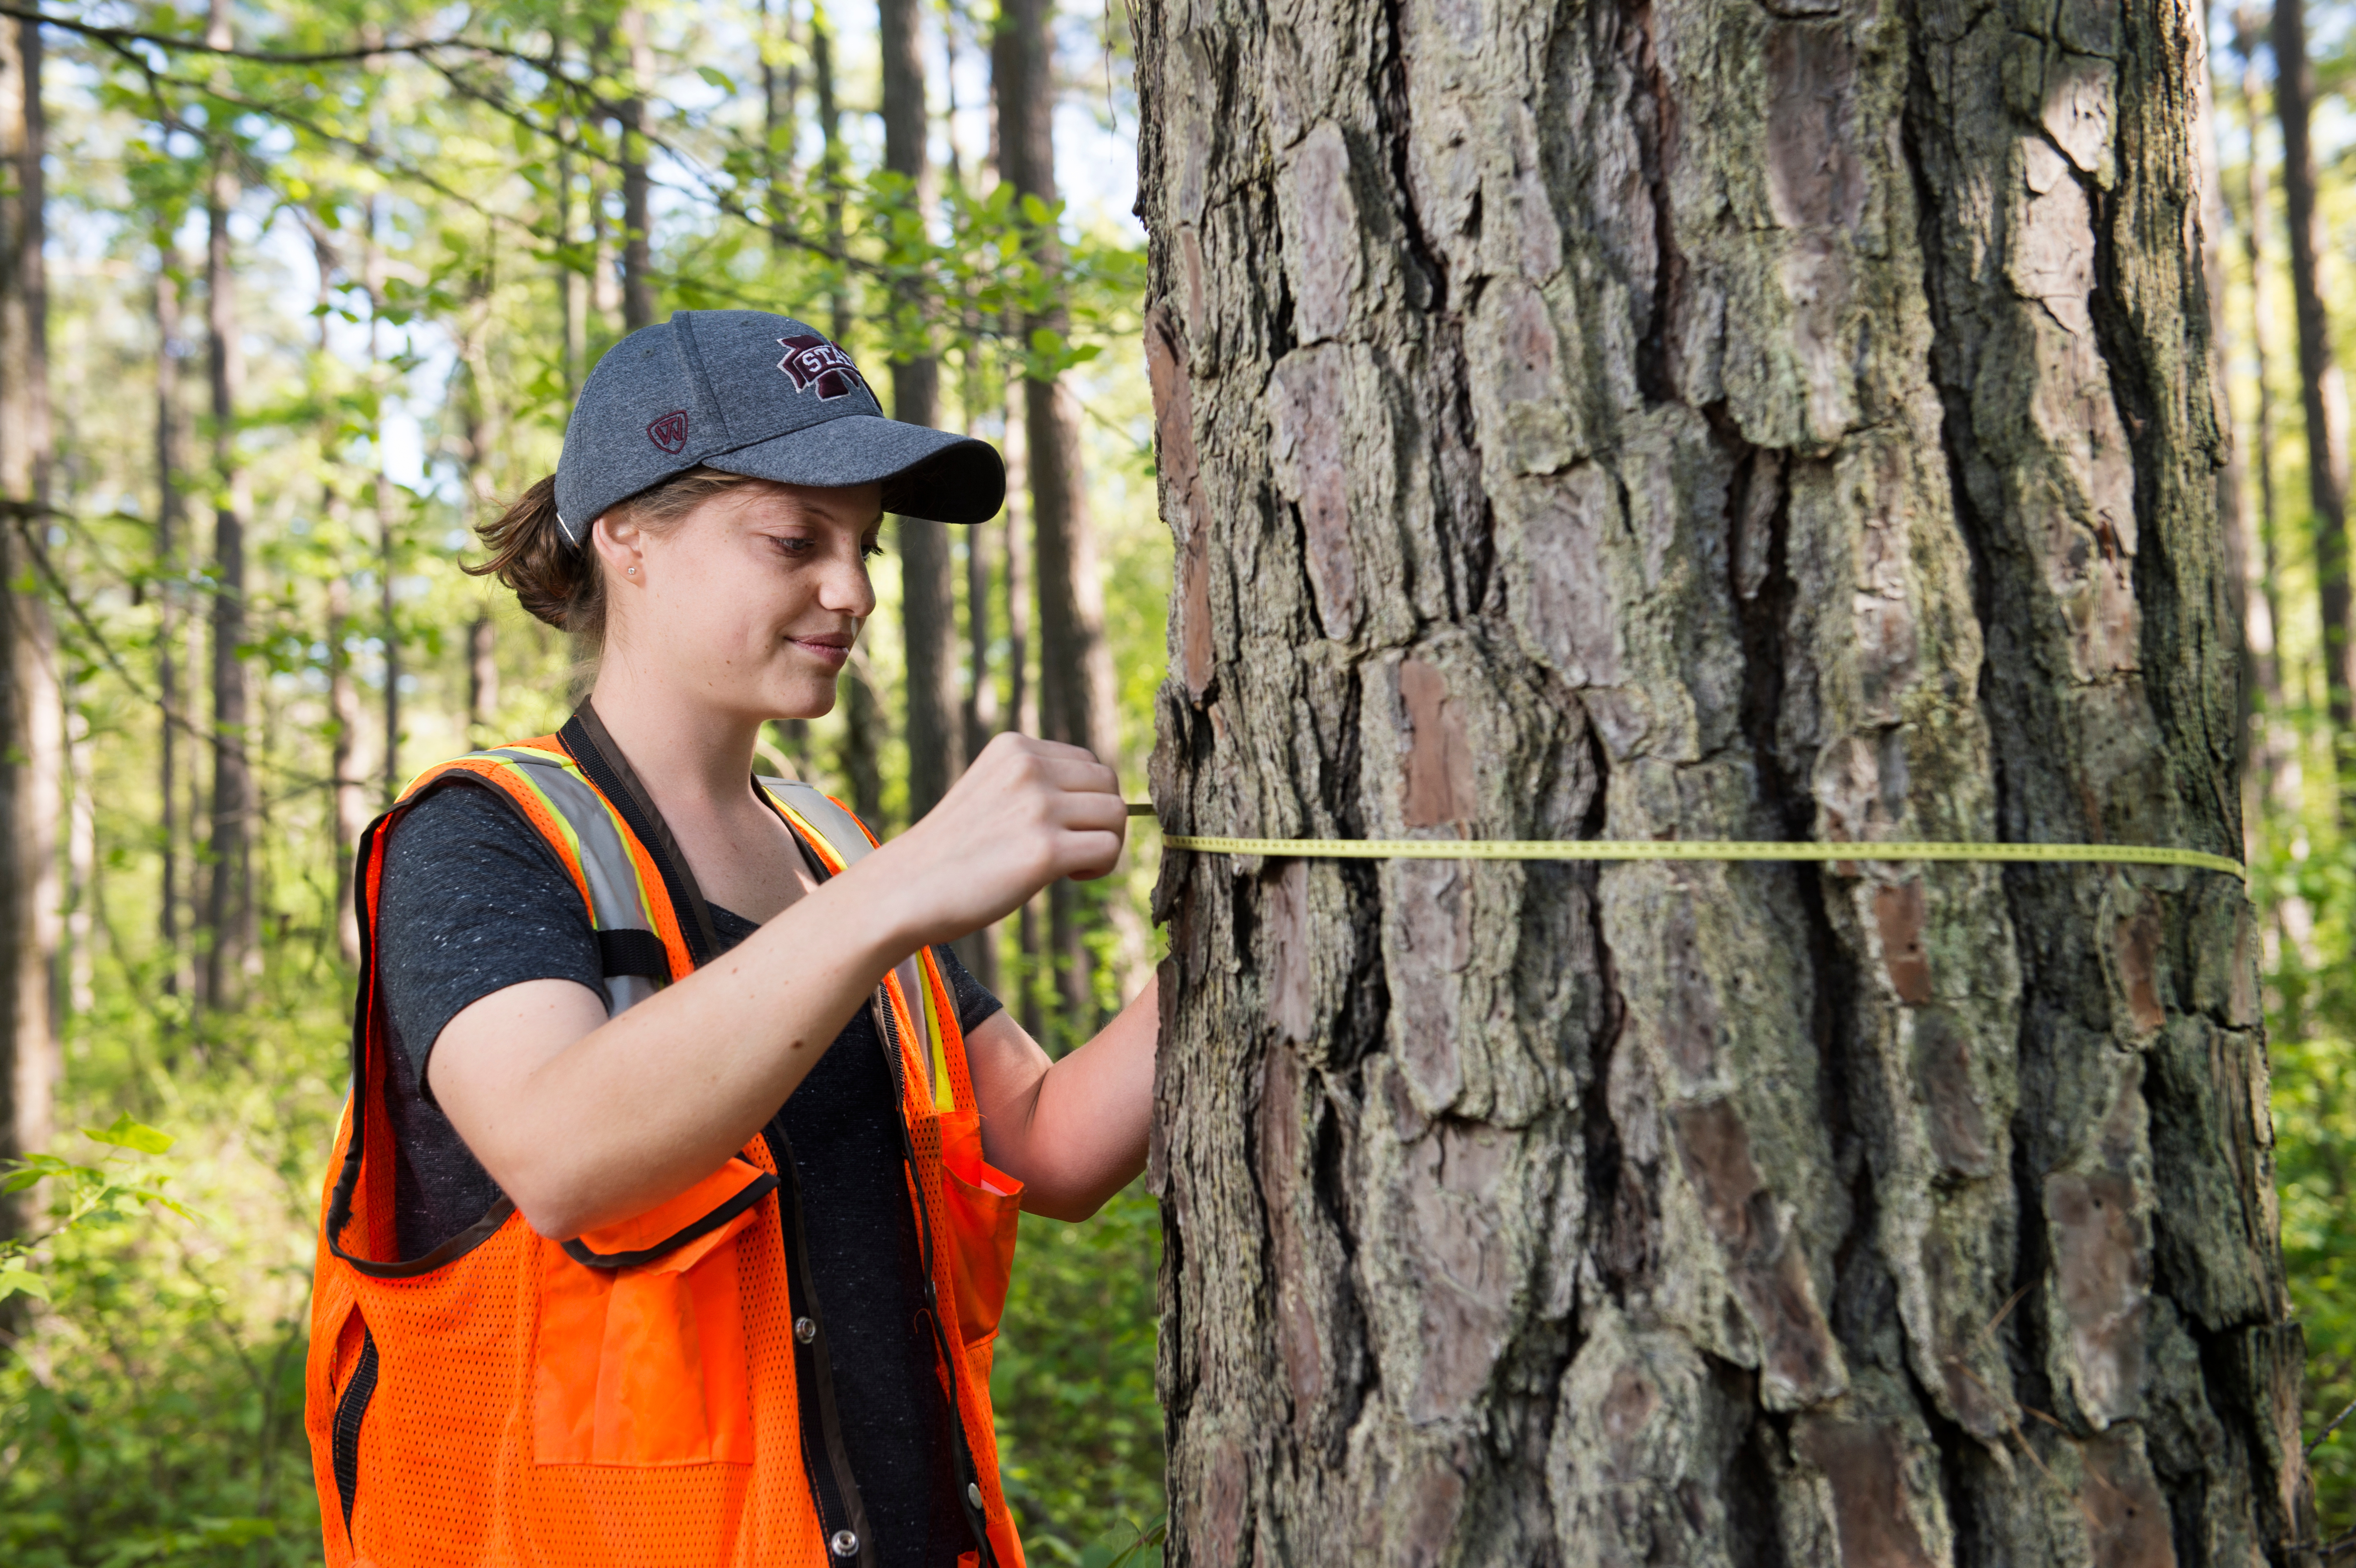 Samantha Seamon measuring tree